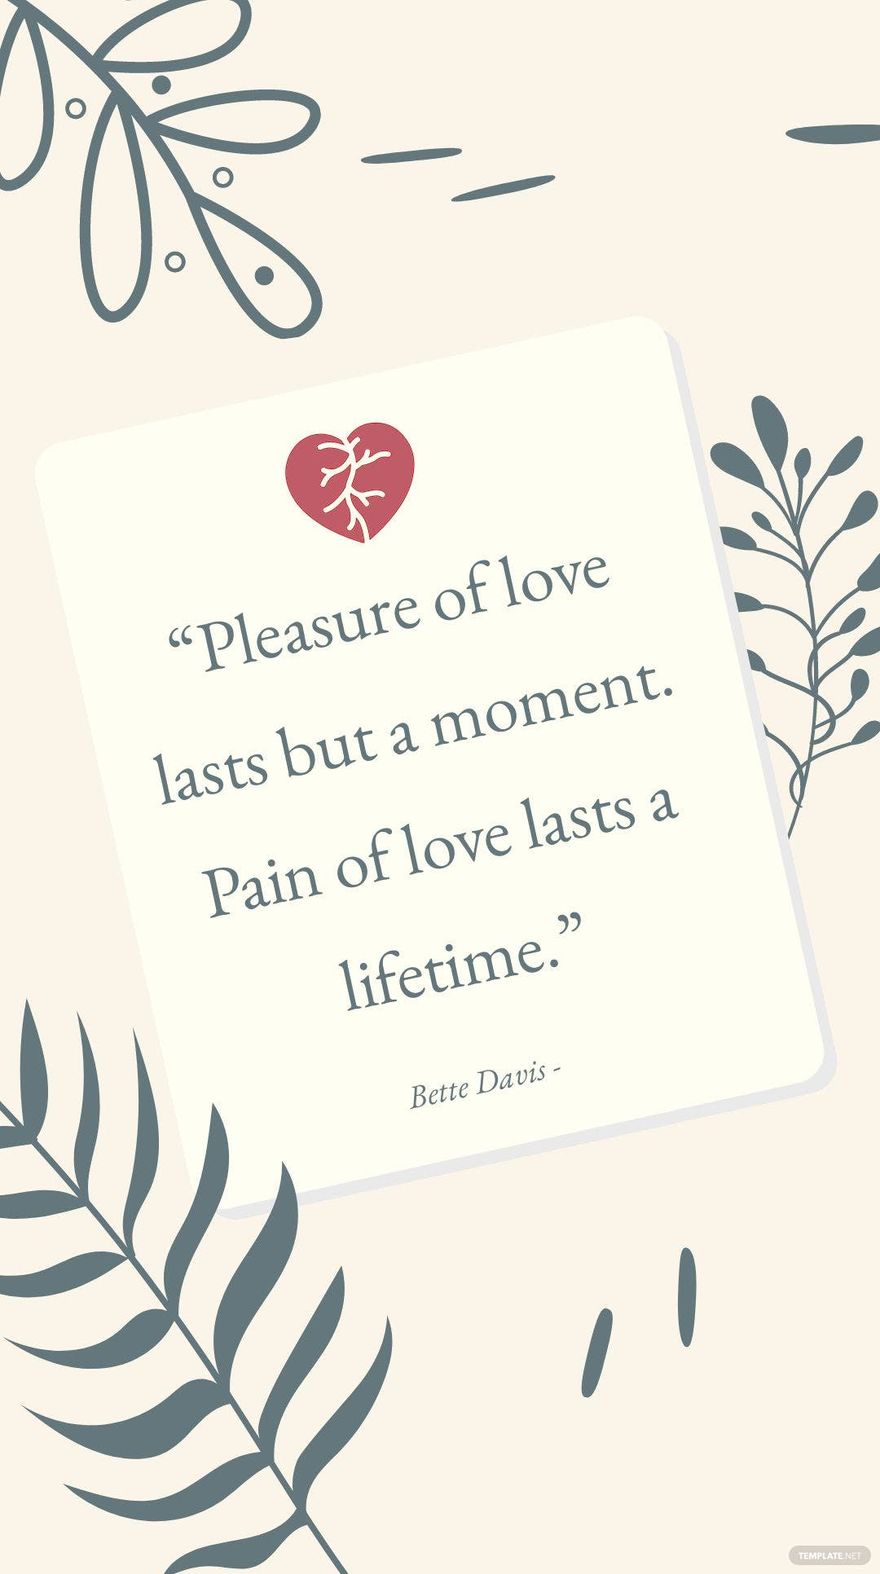 Bette Davis - “Pleasure of love lasts but a moment. Pain of love lasts a lifetime.”